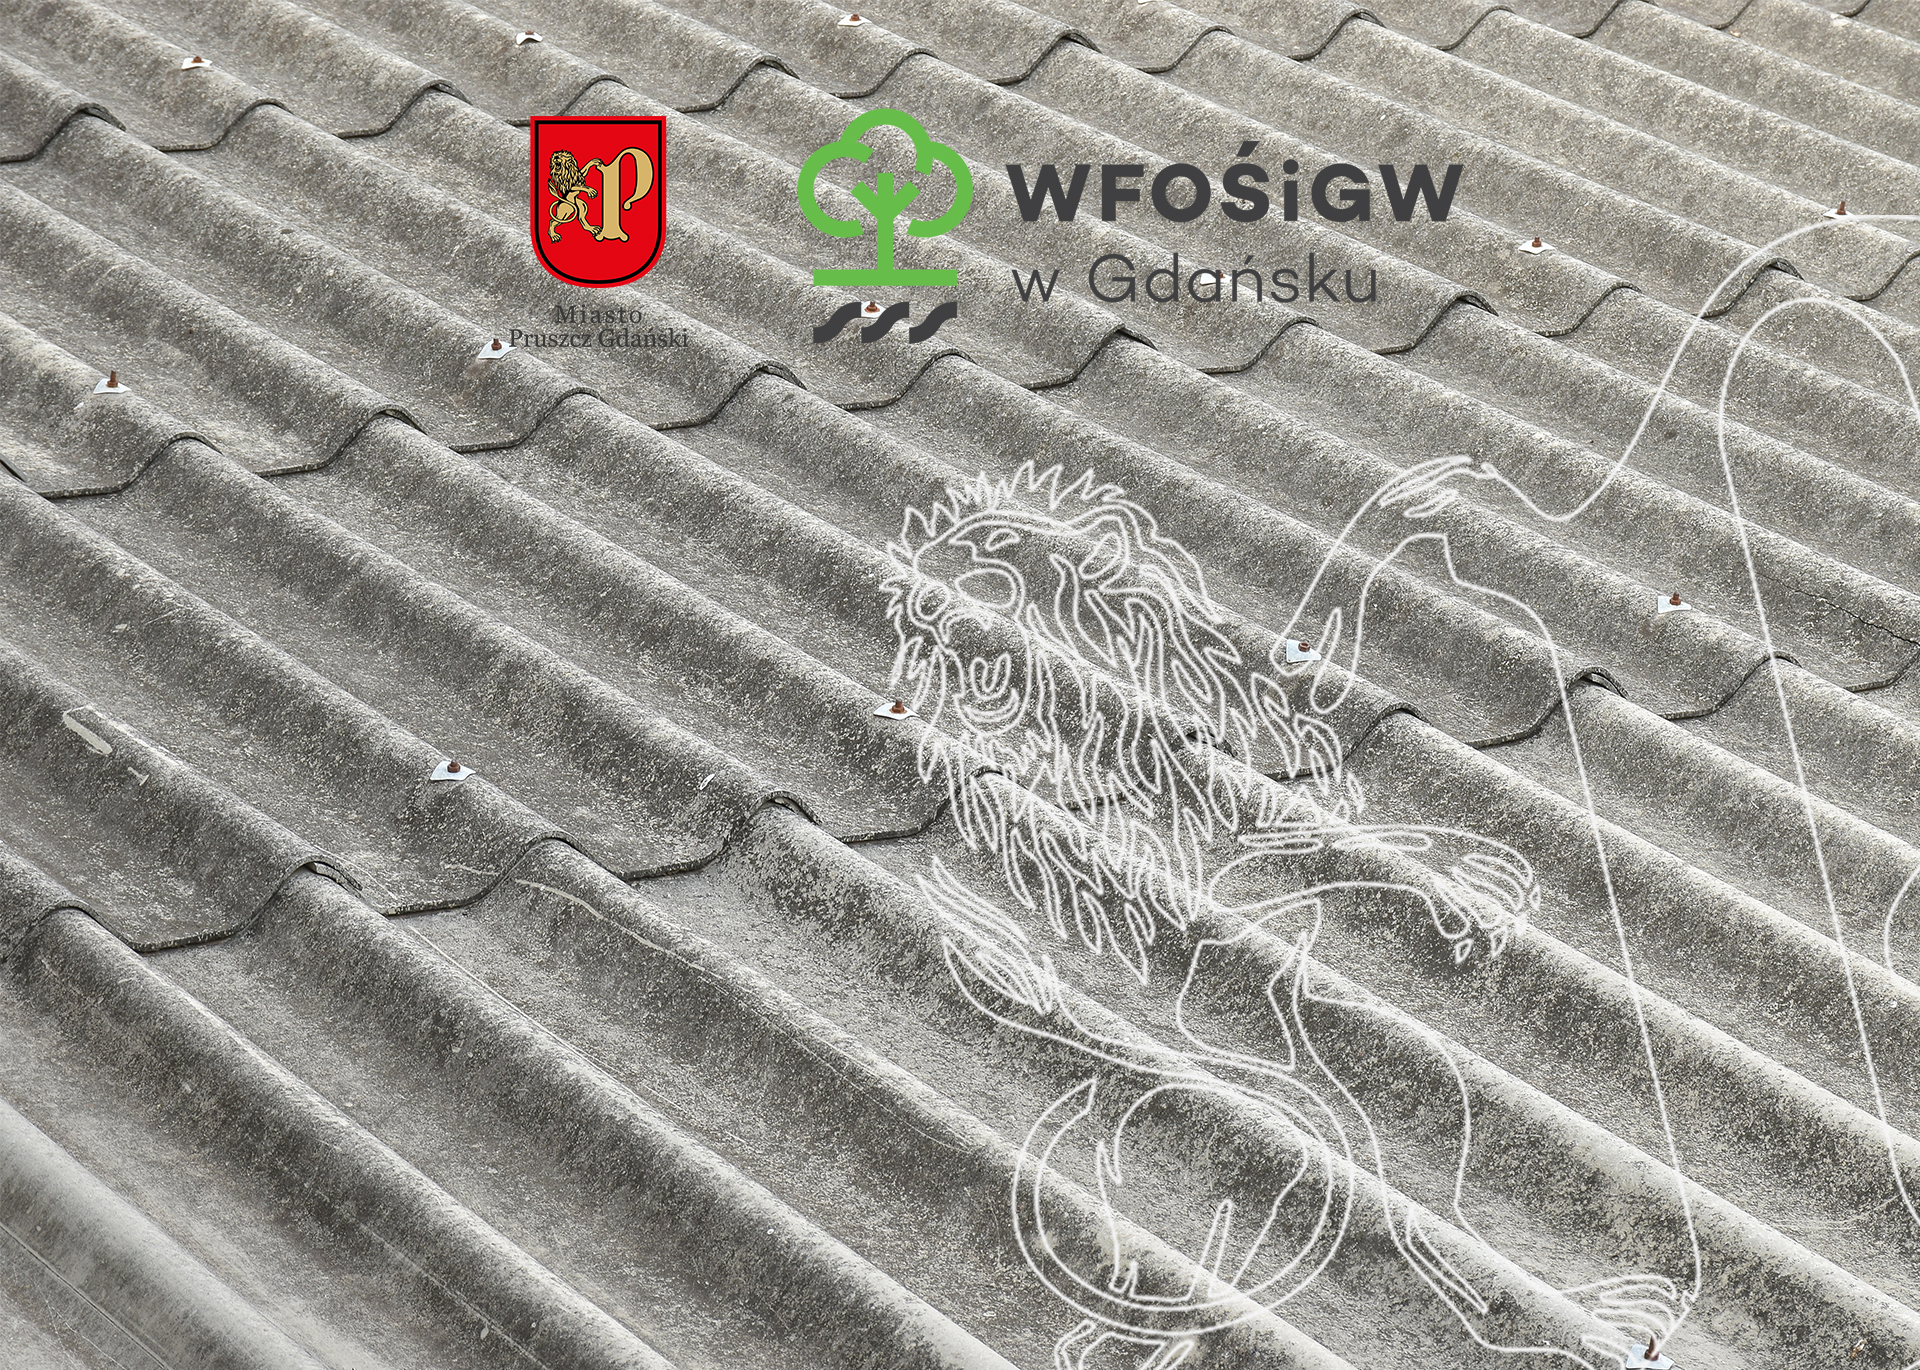 Realizacja zadania pn. Usuwanie wyrobów zawierających azbest z terenu miasta Pruszcz Gdański – edycja 2020